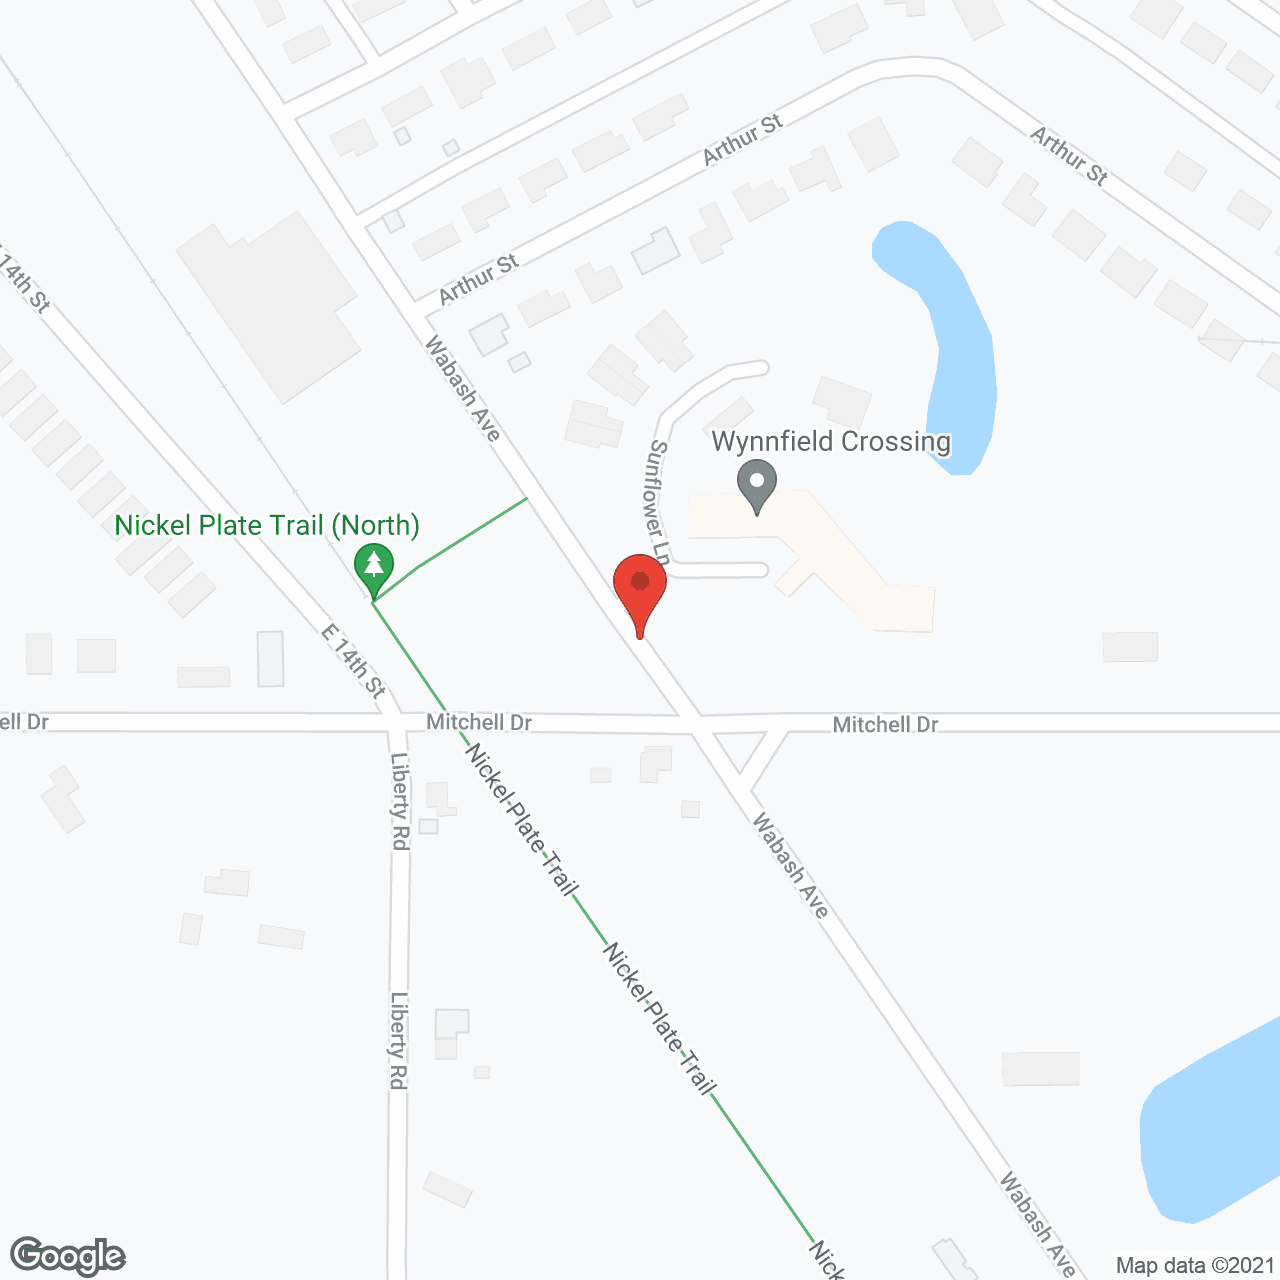 Wynnfield Crossing in google map